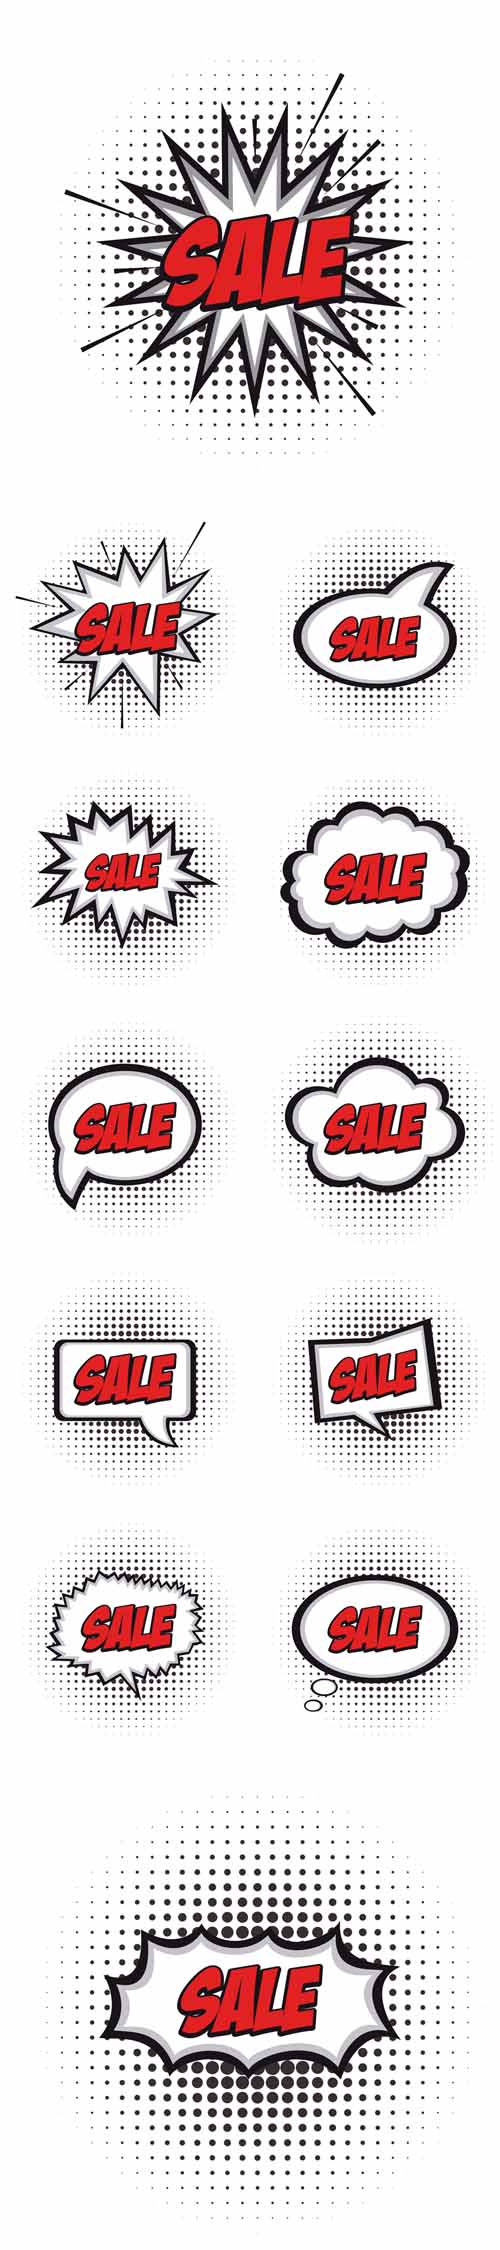 Vectors - Sale Comic Expressions